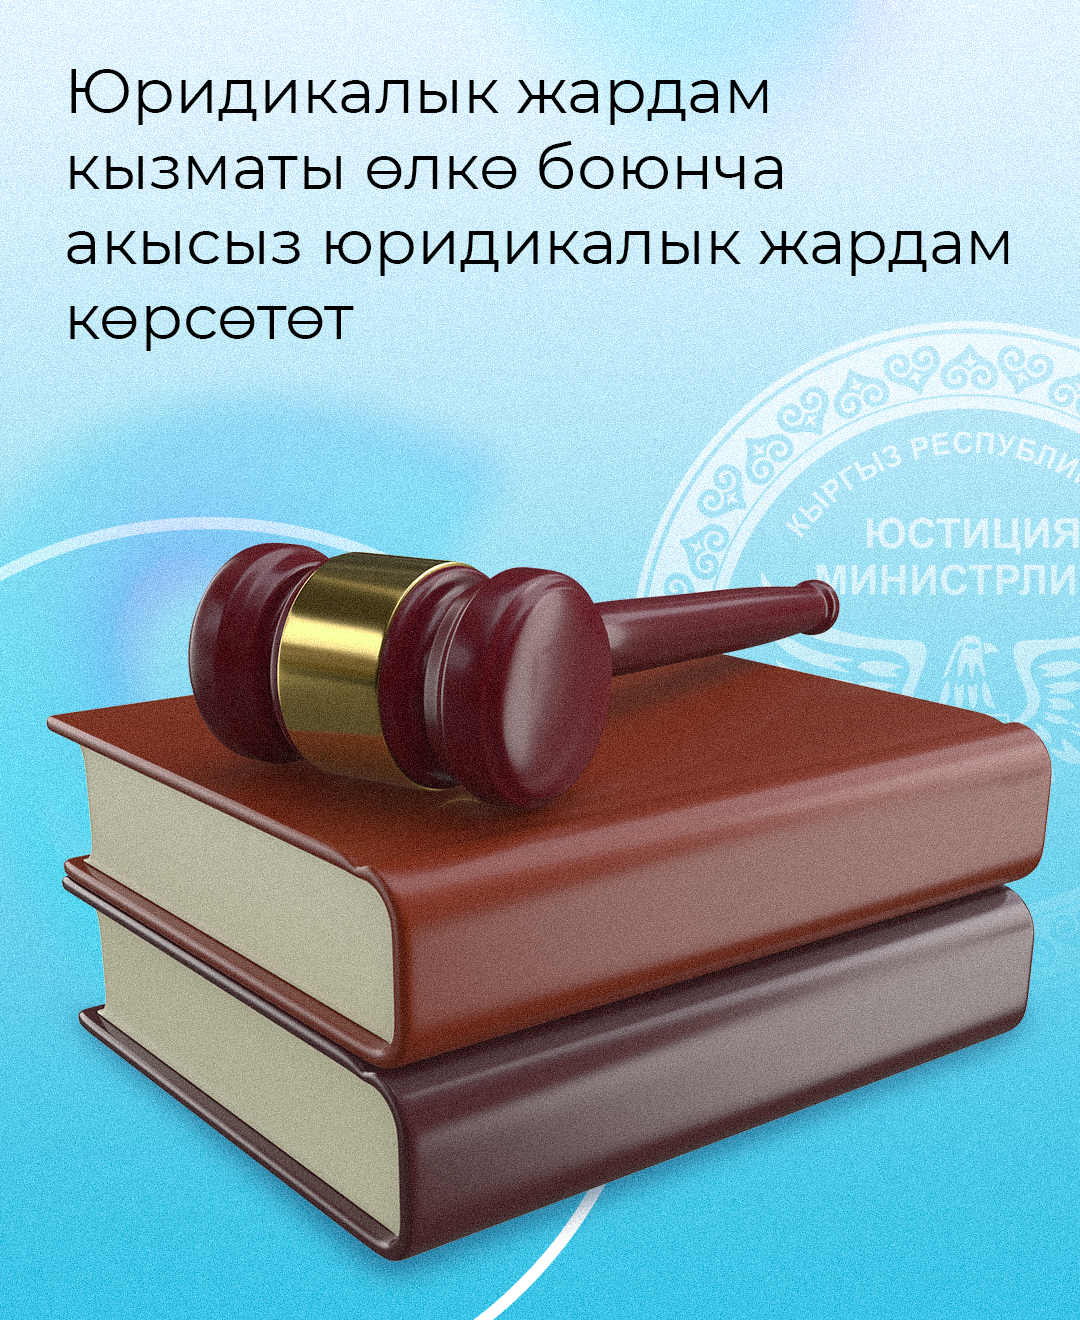 Служба юридической помощи при Минюсте КР (далее - СЮП) предоставляет гарантированную государством юридическую помощь на районном уровне по всей республике